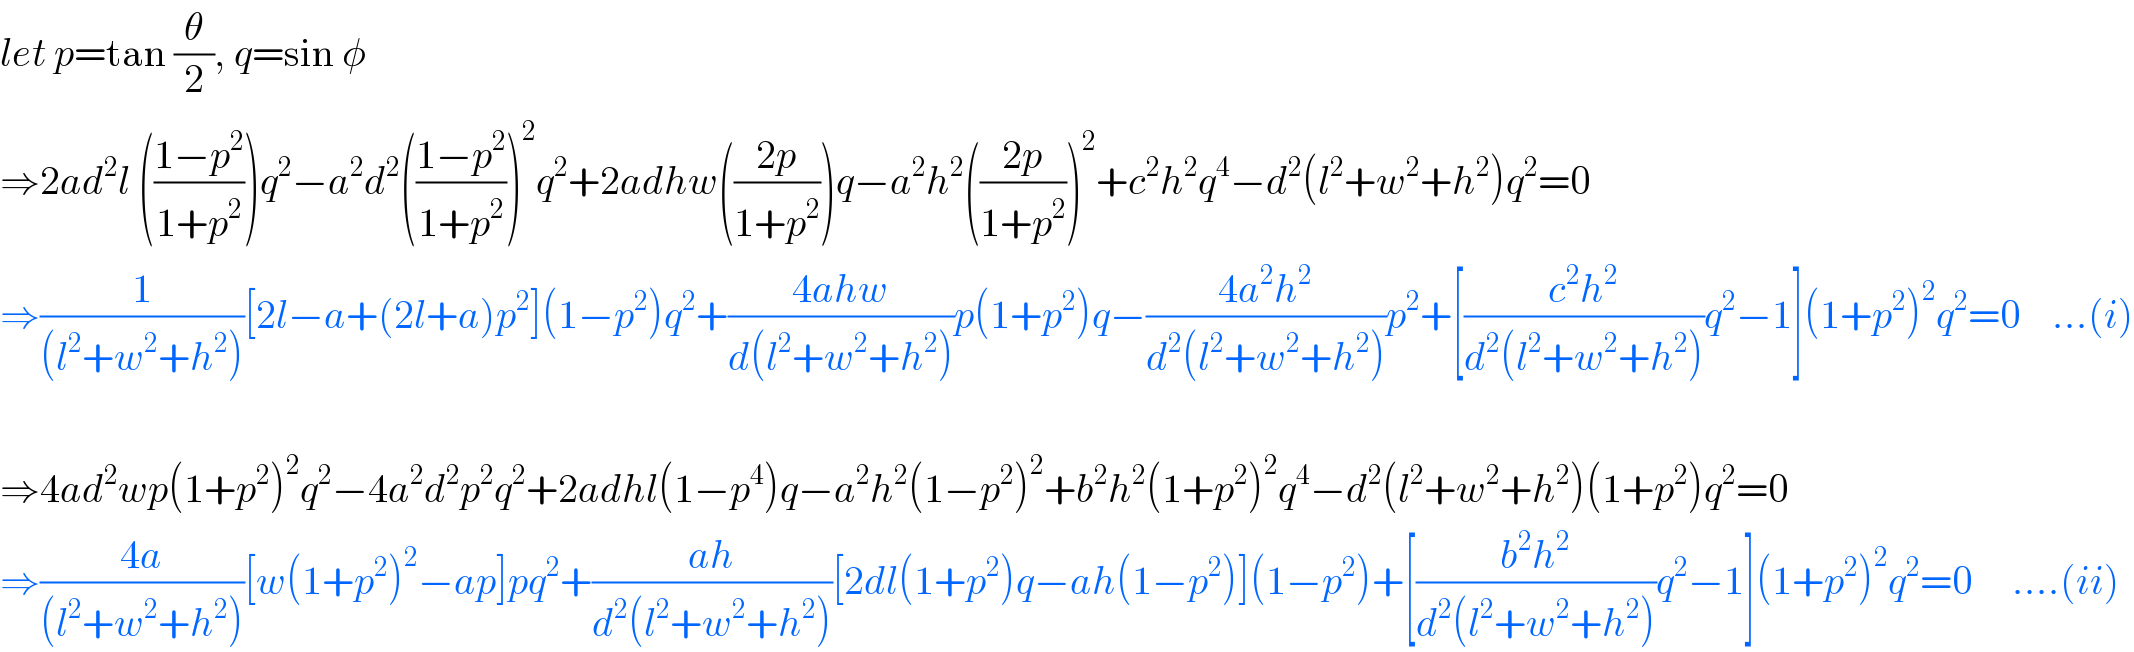 let p=tan (θ/2), q=sin φ  ⇒2ad^2 l (((1−p^2 )/(1+p^2 )))q^2 −a^2 d^2 (((1−p^2 )/(1+p^2 )))^2 q^2 +2adhw(((2p)/(1+p^2 )))q−a^2 h^2 (((2p)/(1+p^2 )))^2 +c^2 h^2 q^4 −d^2 (l^2 +w^2 +h^2 )q^2 =0   ⇒(1/((l^2 +w^2 +h^2 )))[2l−a+(2l+a)p^2 ](1−p^2 )q^2 +((4ahw)/(d(l^2 +w^2 +h^2 )))p(1+p^2 )q−((4a^2 h^2 )/(d^2 (l^2 +w^2 +h^2 )))p^2 +[((c^2 h^2 )/(d^2 (l^2 +w^2 +h^2 )))q^2 −1](1+p^2 )^2 q^2 =0    ...(i)    ⇒4ad^2 wp(1+p^2 )^2 q^2 −4a^2 d^2 p^2 q^2 +2adhl(1−p^4 )q−a^2 h^2 (1−p^2 )^2 +b^2 h^2 (1+p^2 )^2 q^4 −d^2 (l^2 +w^2 +h^2 )(1+p^2 )q^2 =0  ⇒((4a)/((l^2 +w^2 +h^2 )))[w(1+p^2 )^2 −ap]pq^2 +((ah)/(d^2 (l^2 +w^2 +h^2 )))[2dl(1+p^2 )q−ah(1−p^2 )](1−p^2 )+[((b^2 h^2 )/(d^2 (l^2 +w^2 +h^2 )))q^2 −1](1+p^2 )^2 q^2 =0     ....(ii)  